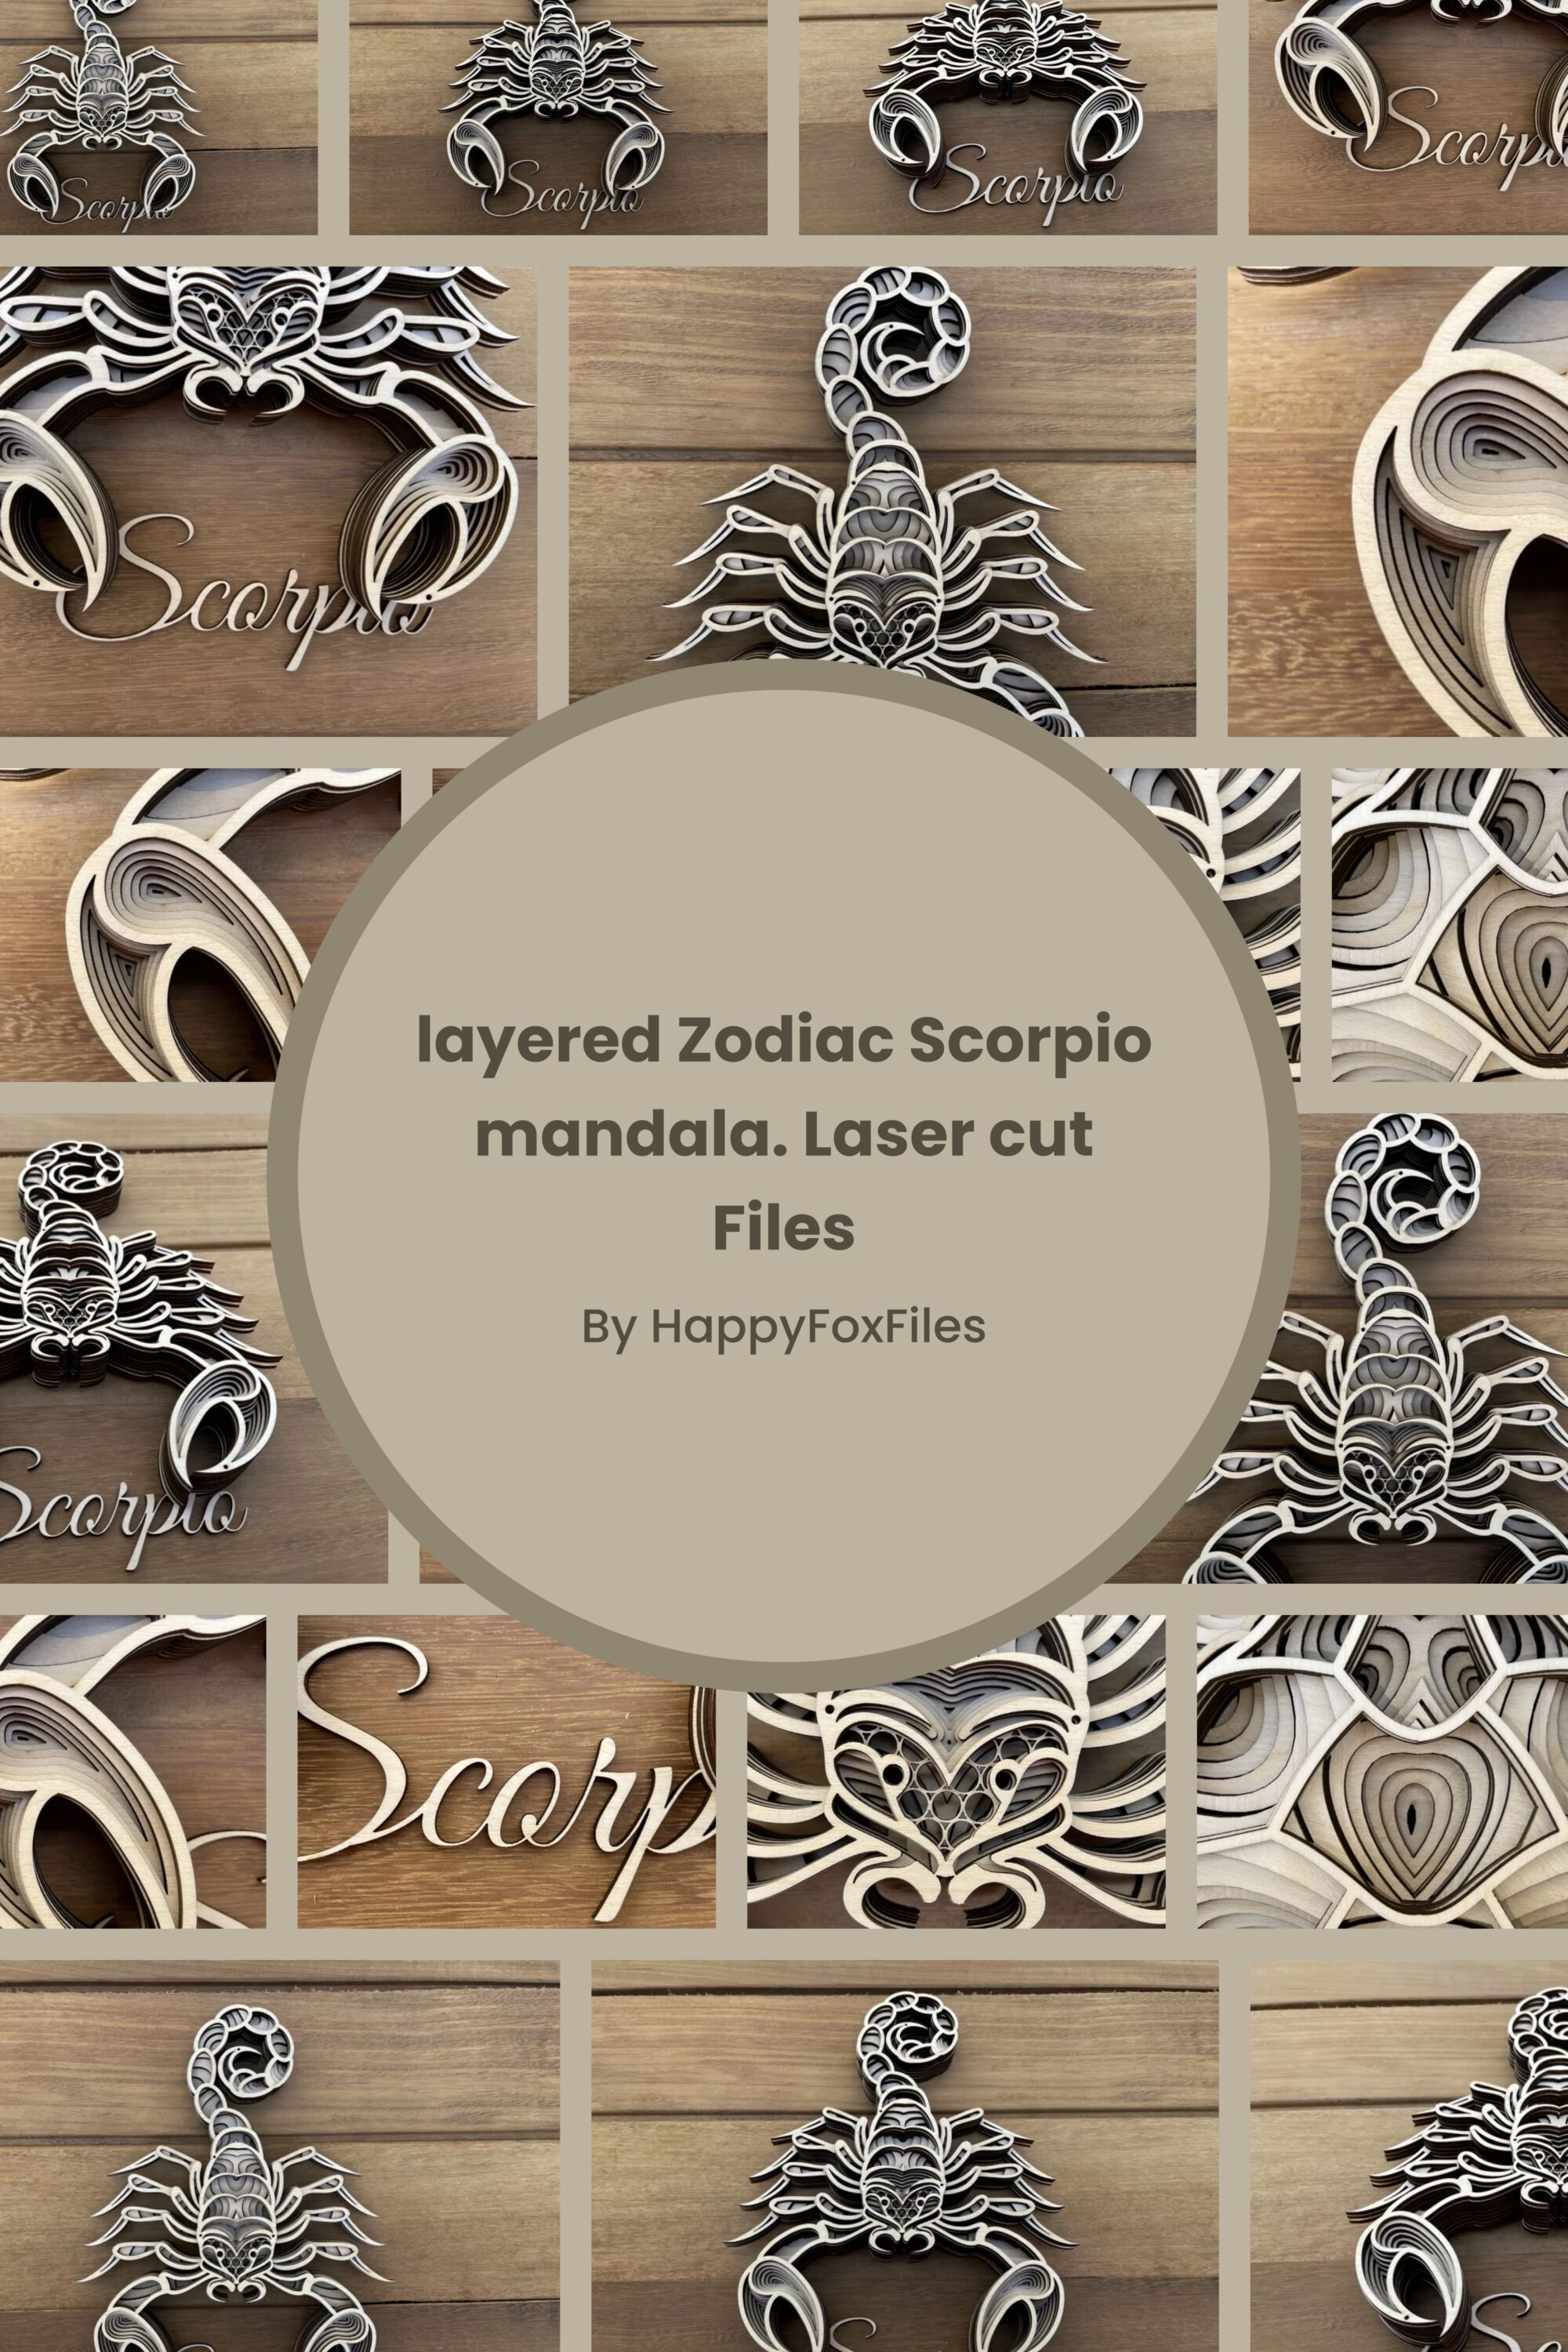 Collage of lasered zodiac scorpio files.